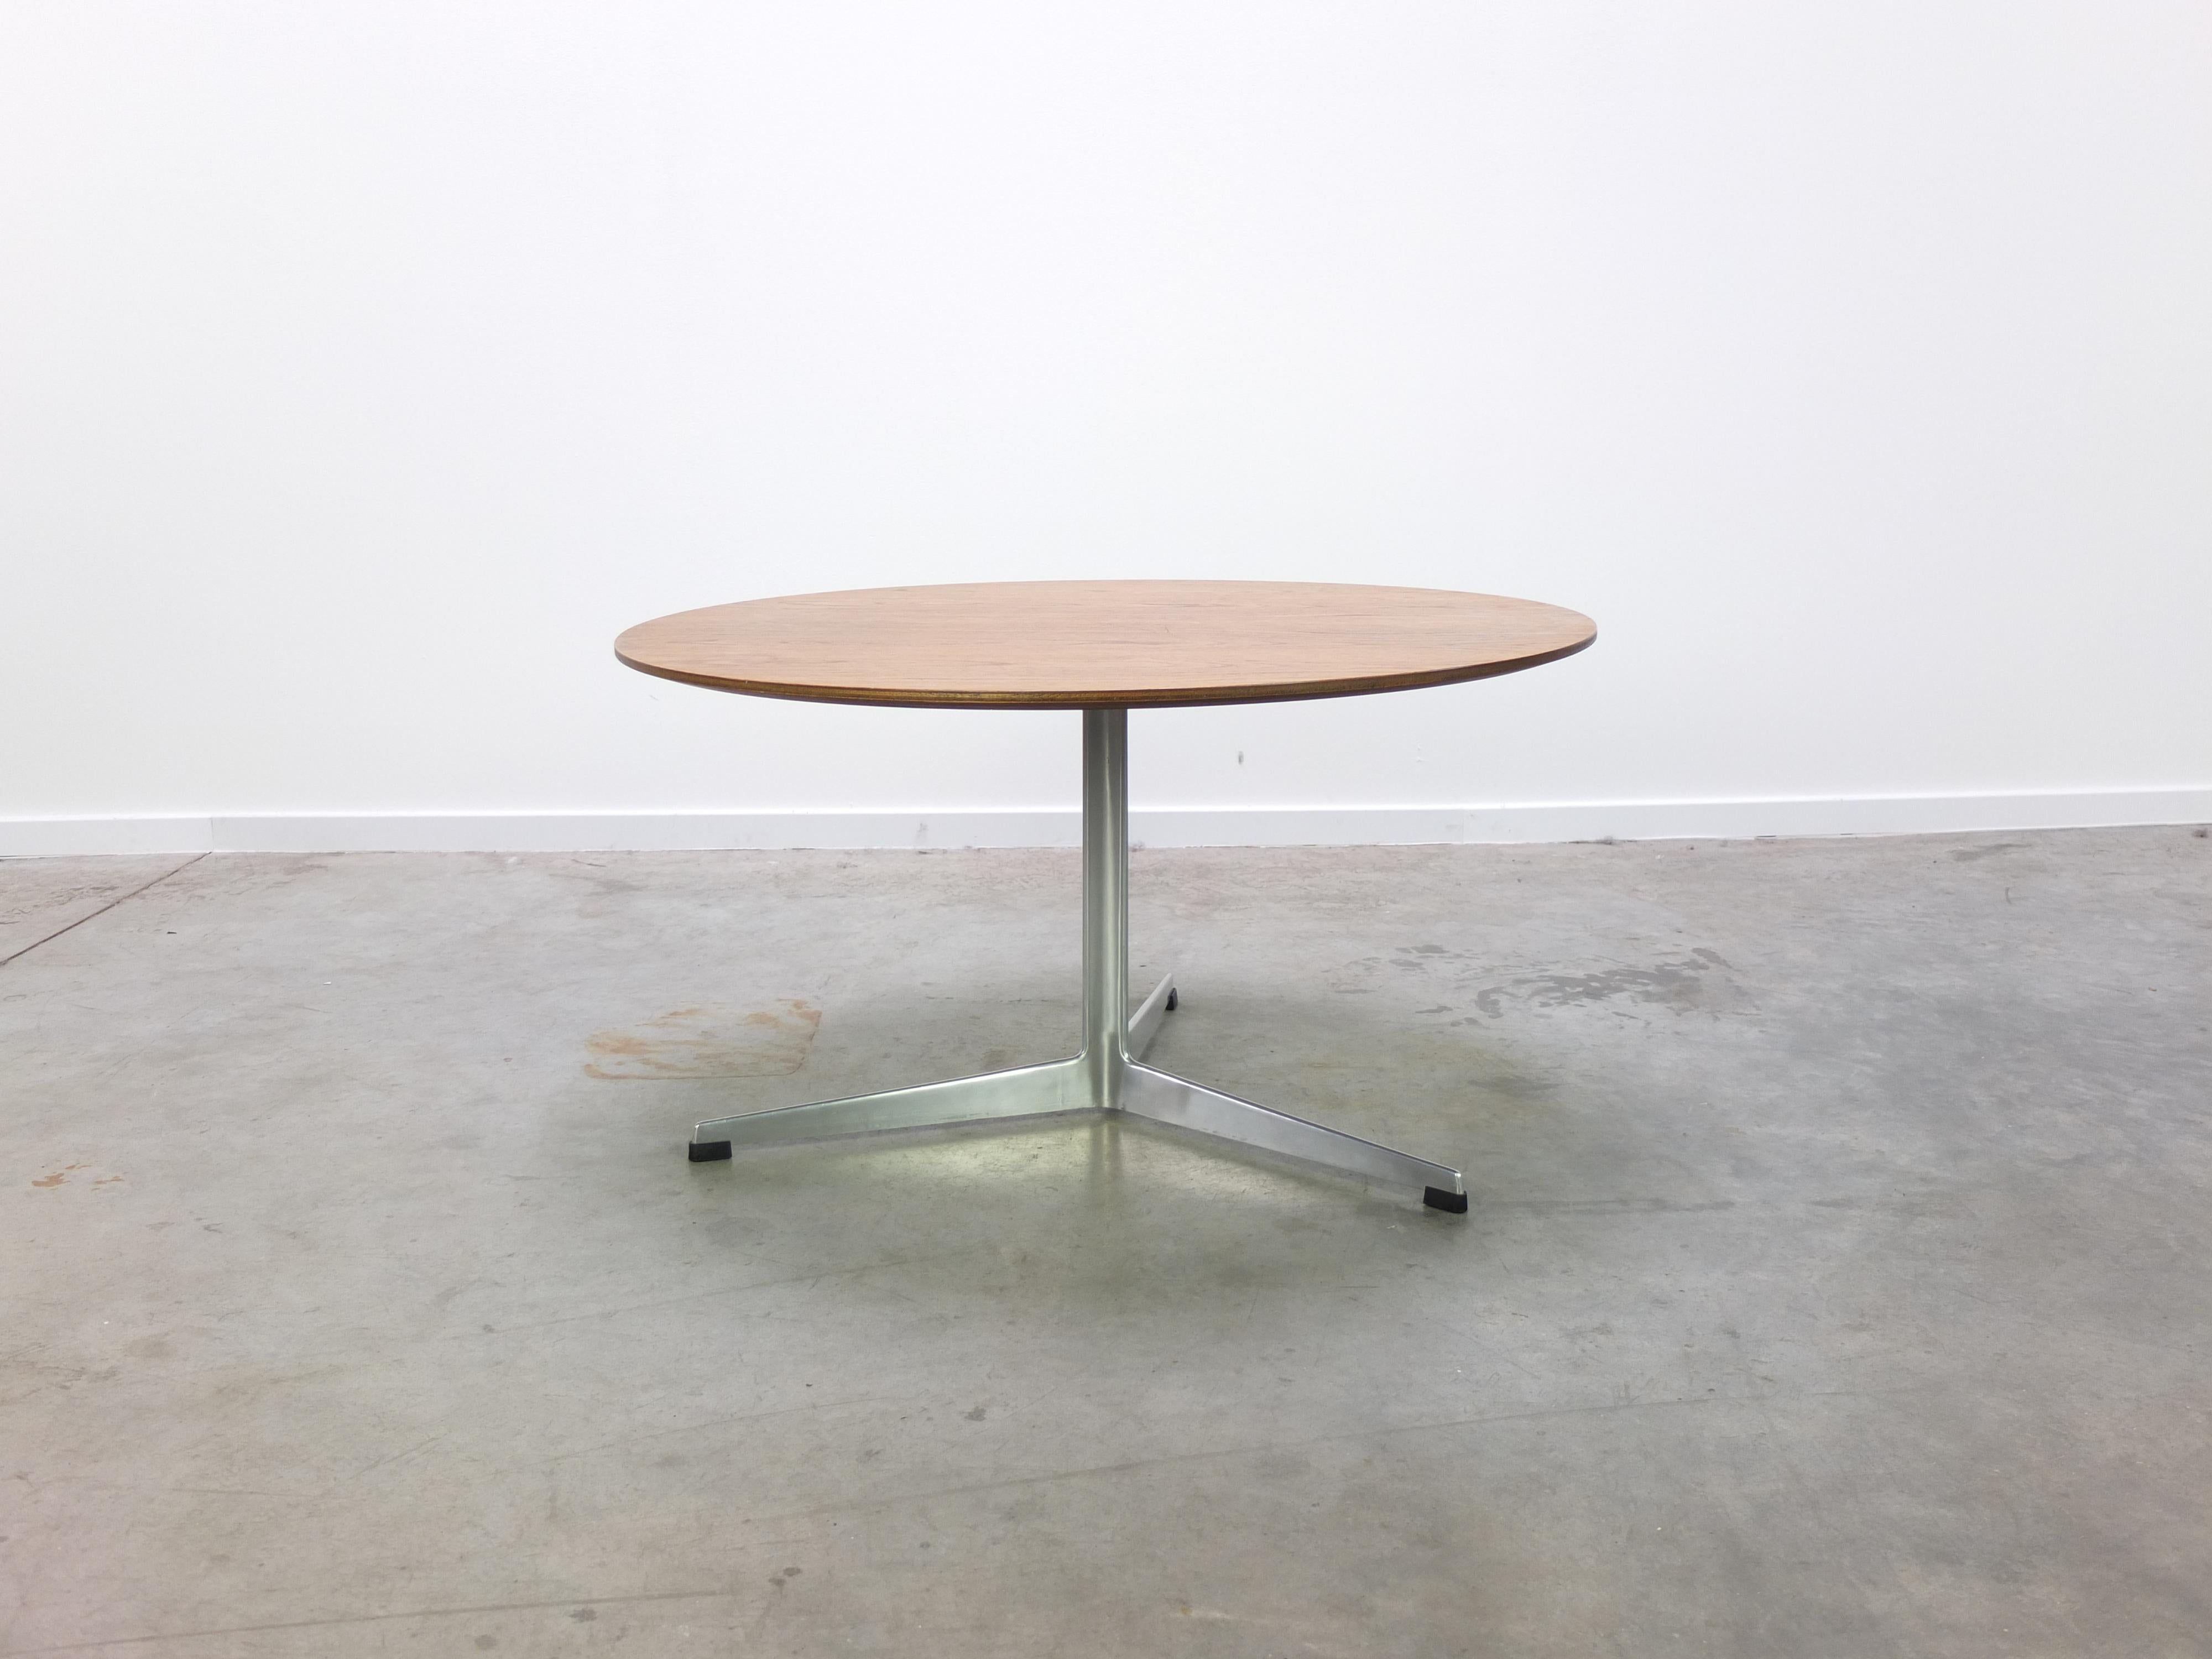 Magnifique table basse ronde conçue par Arne Jacobsen dans les années 1960. Le plateau est en bois de teck et repose sur la base centrale en aluminium à trois pieds. Produit au Danemark par Fritz Hansen en 1964 (labellisé). En très bon état